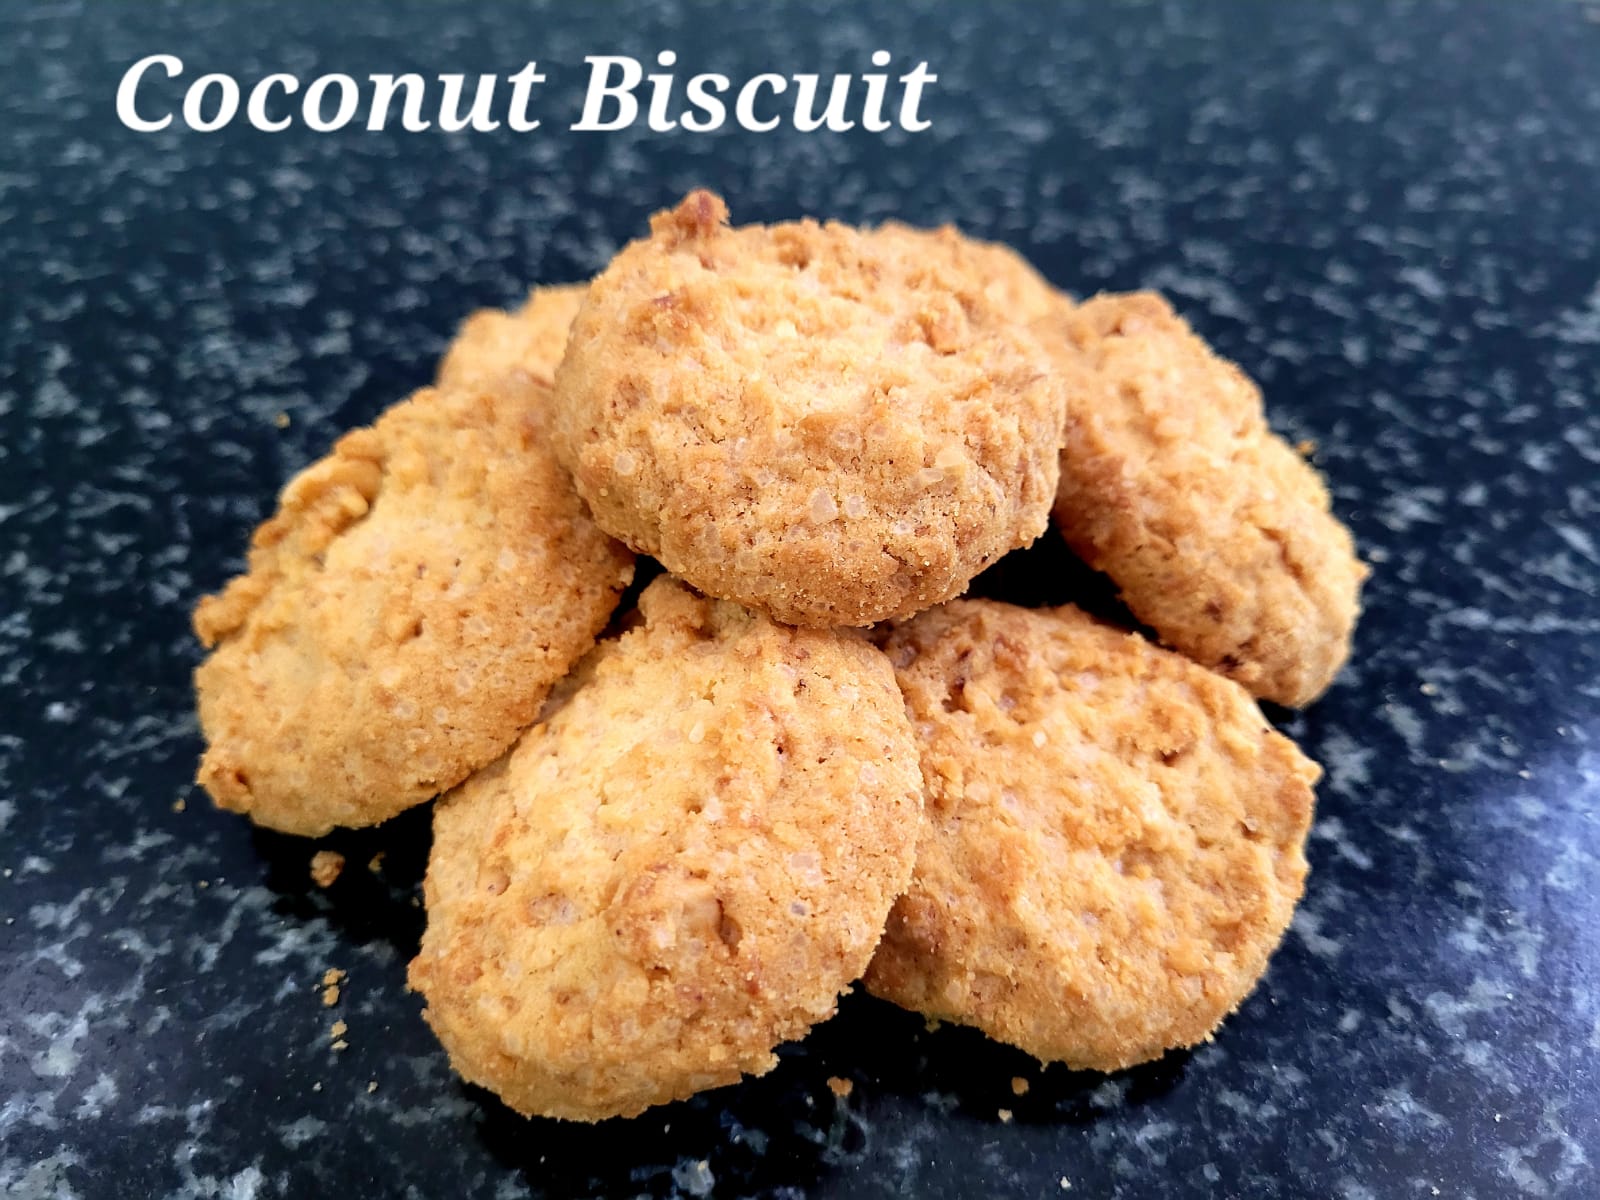 Coconut biscuits